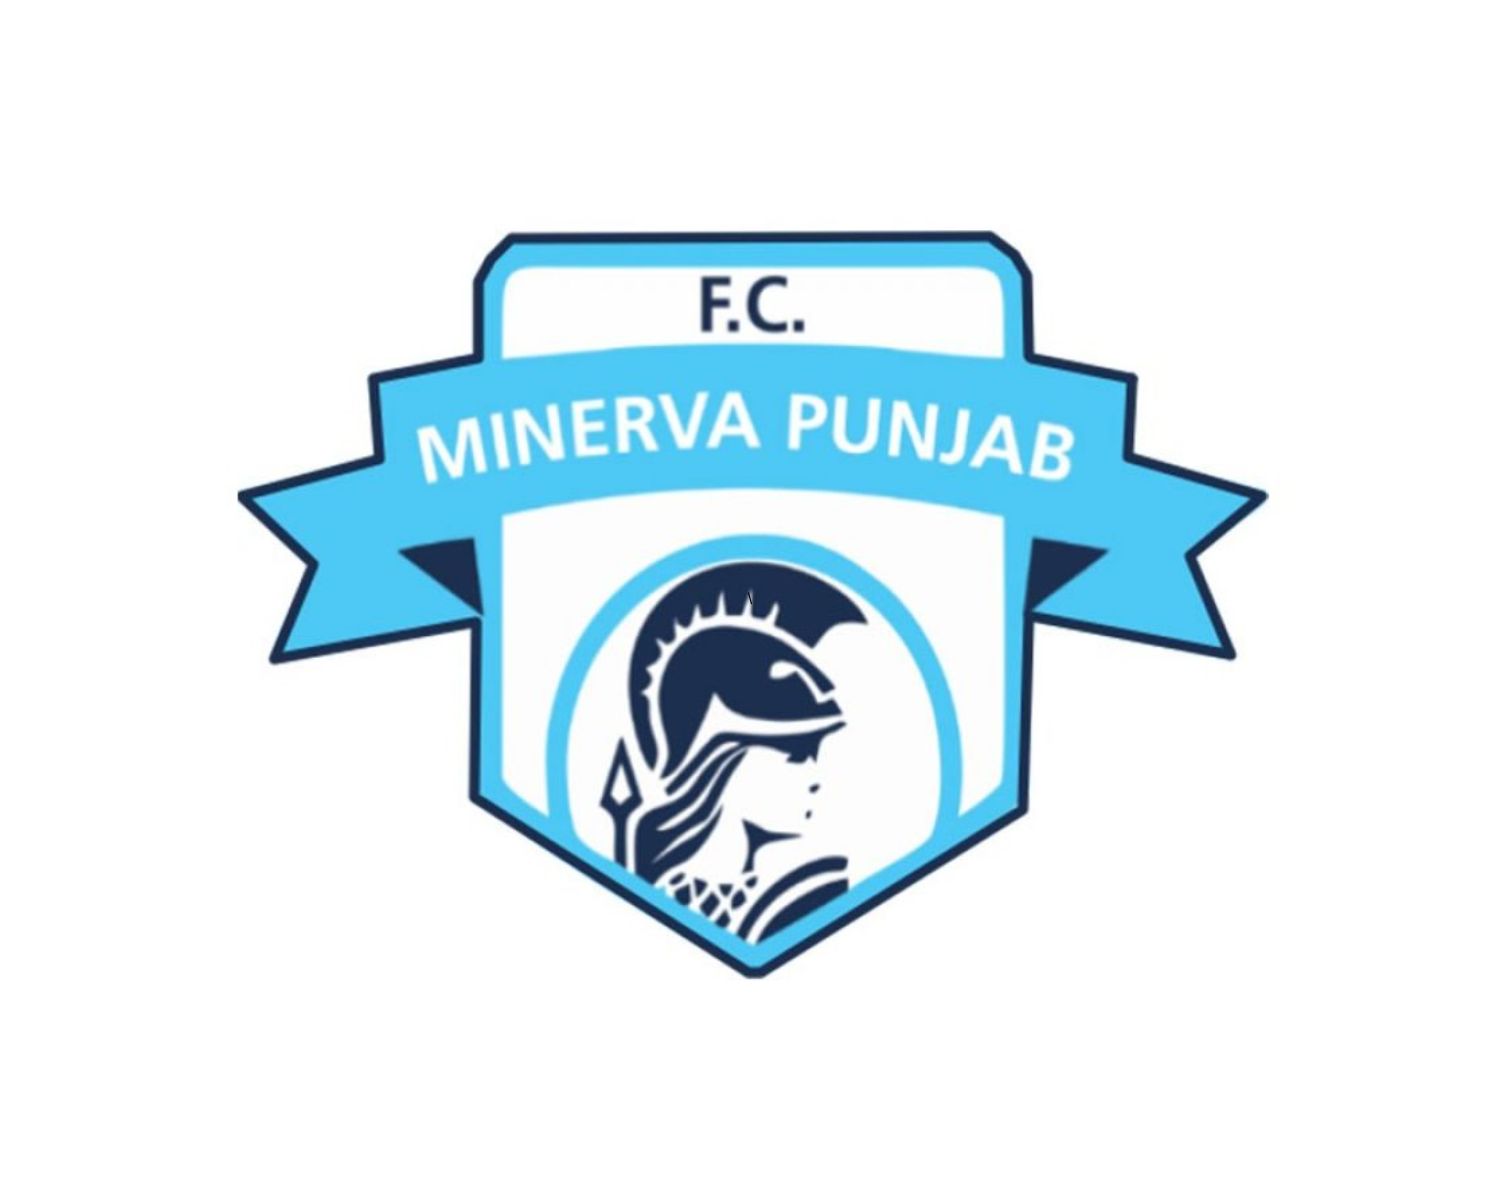 minerva-punjab-fc-17-football-club-facts